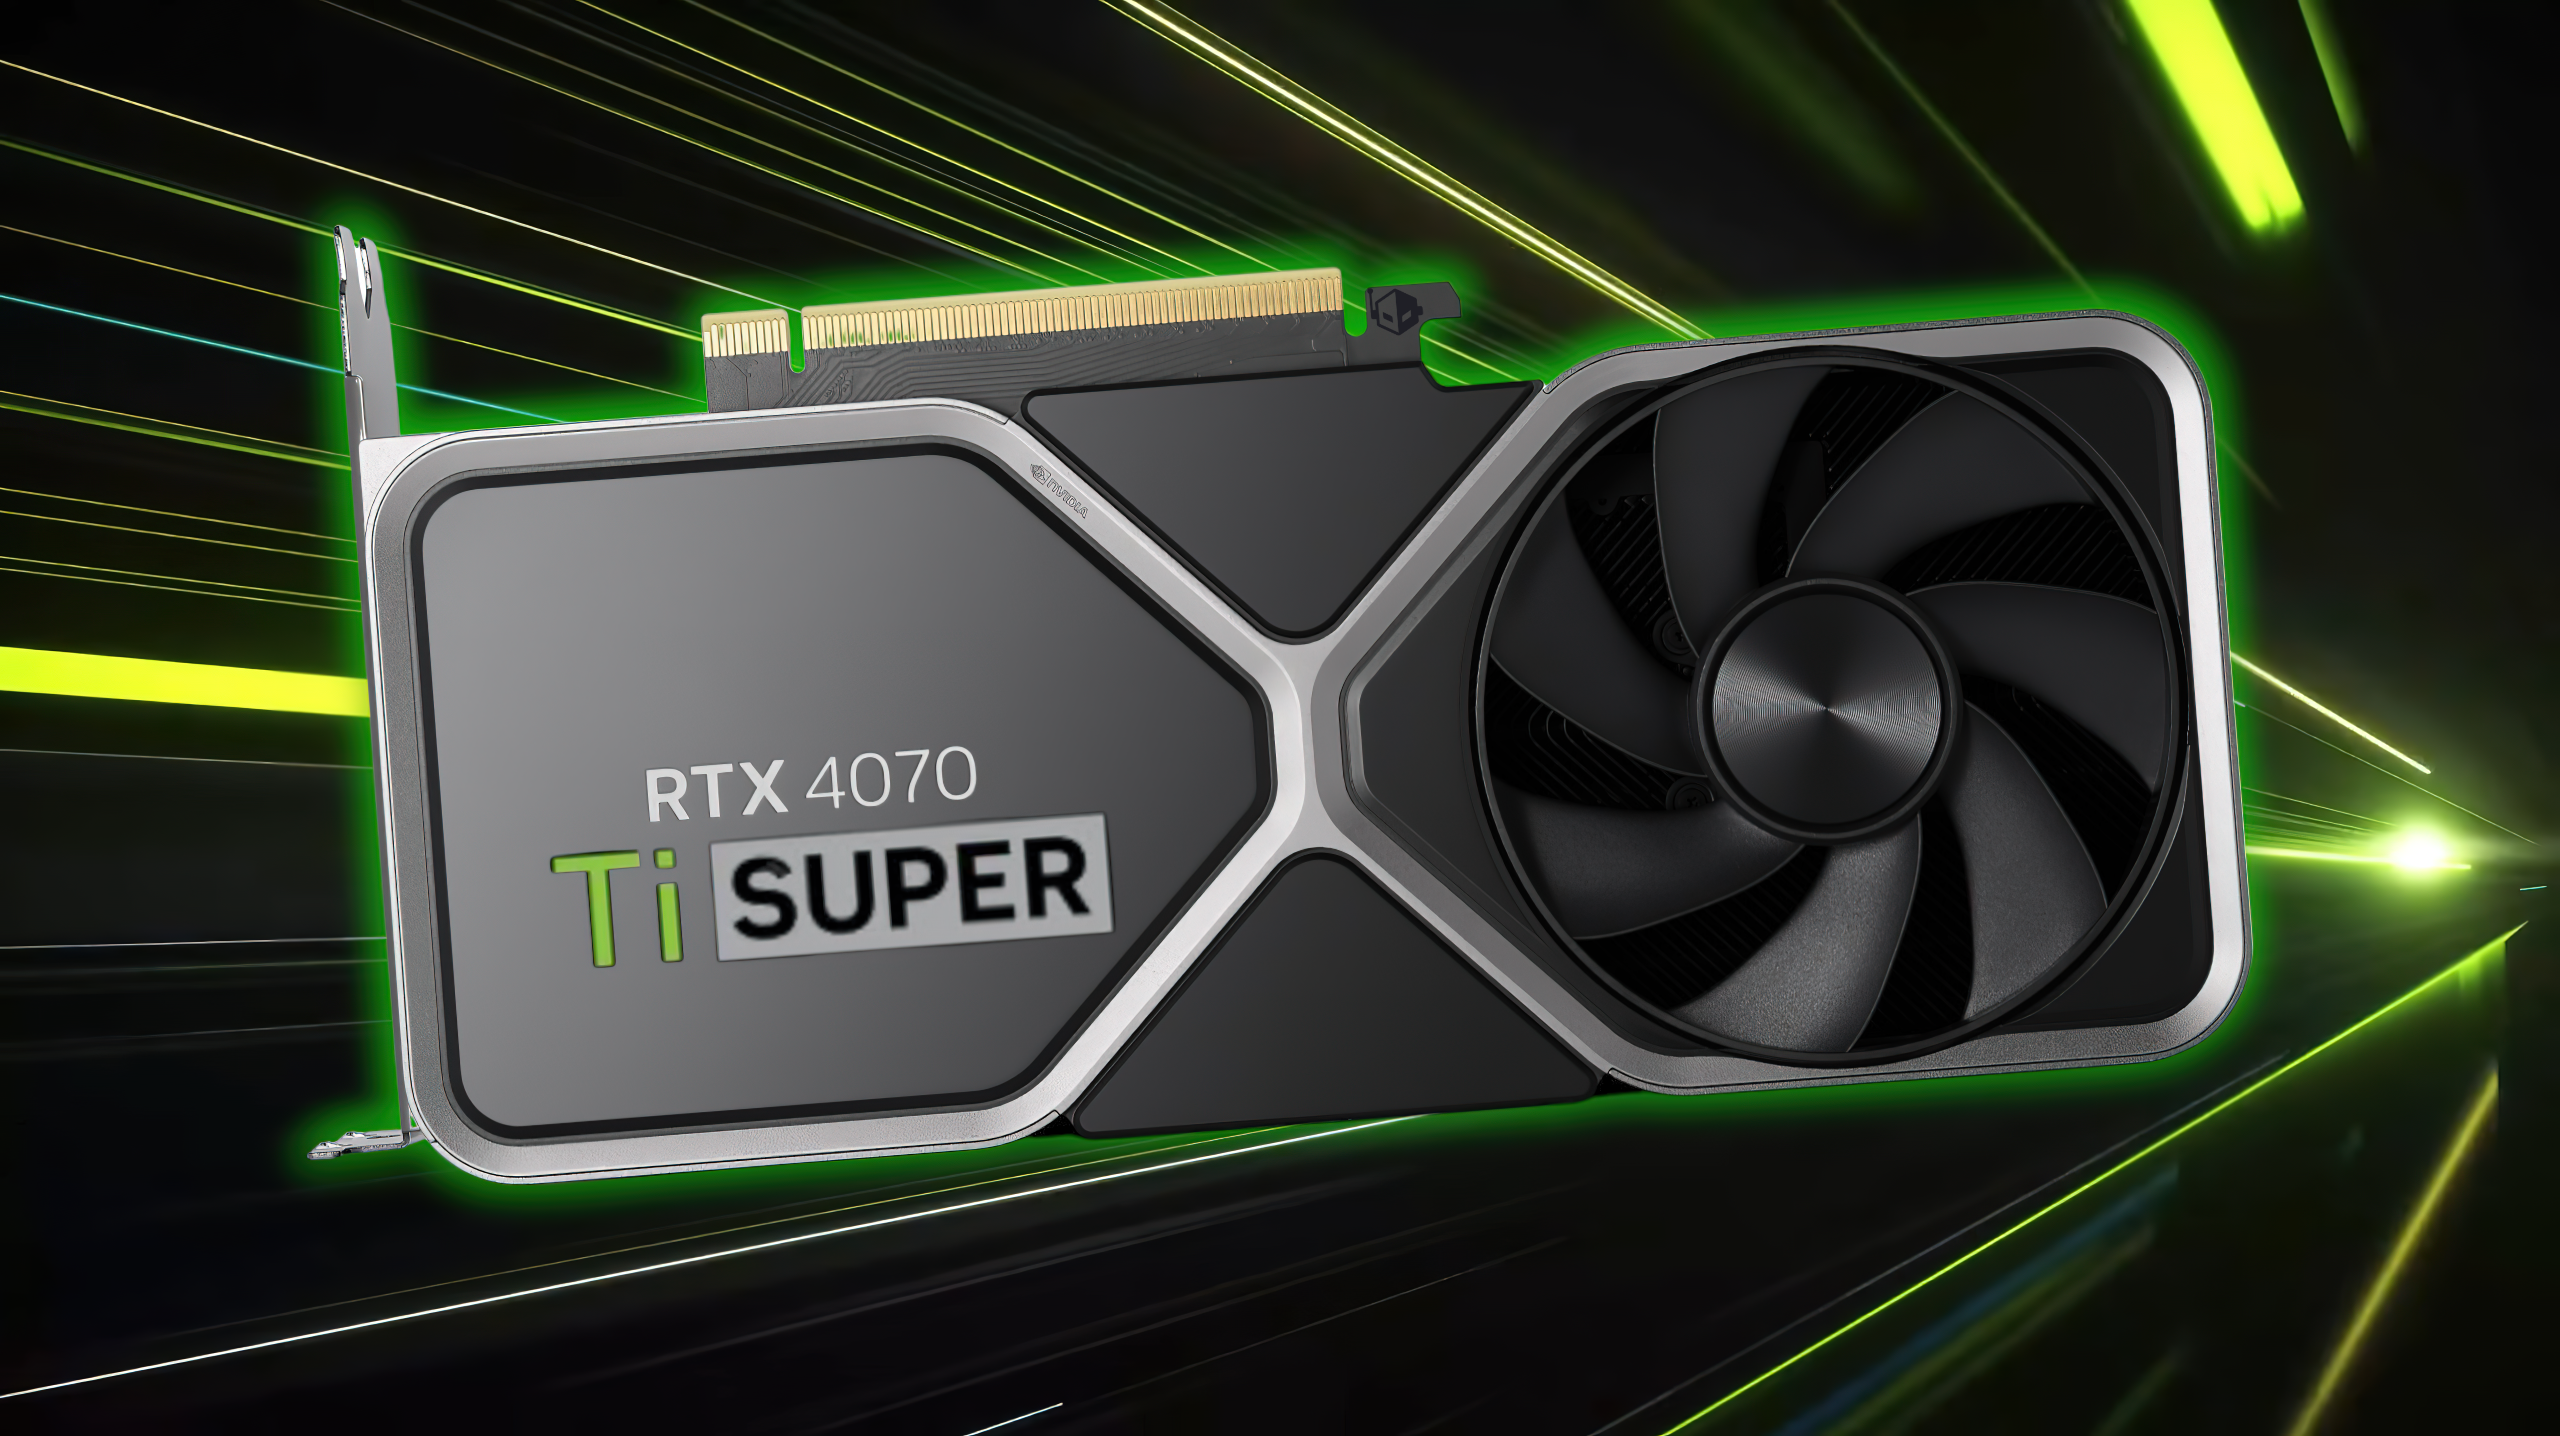 Die Verpackung der NVIDIA GeForce RTX 4070 Ti SUPER verrät, dass es sich möglicherweise um den seltsamsten Namen aller Zeiten für eine GPU 1 handelt